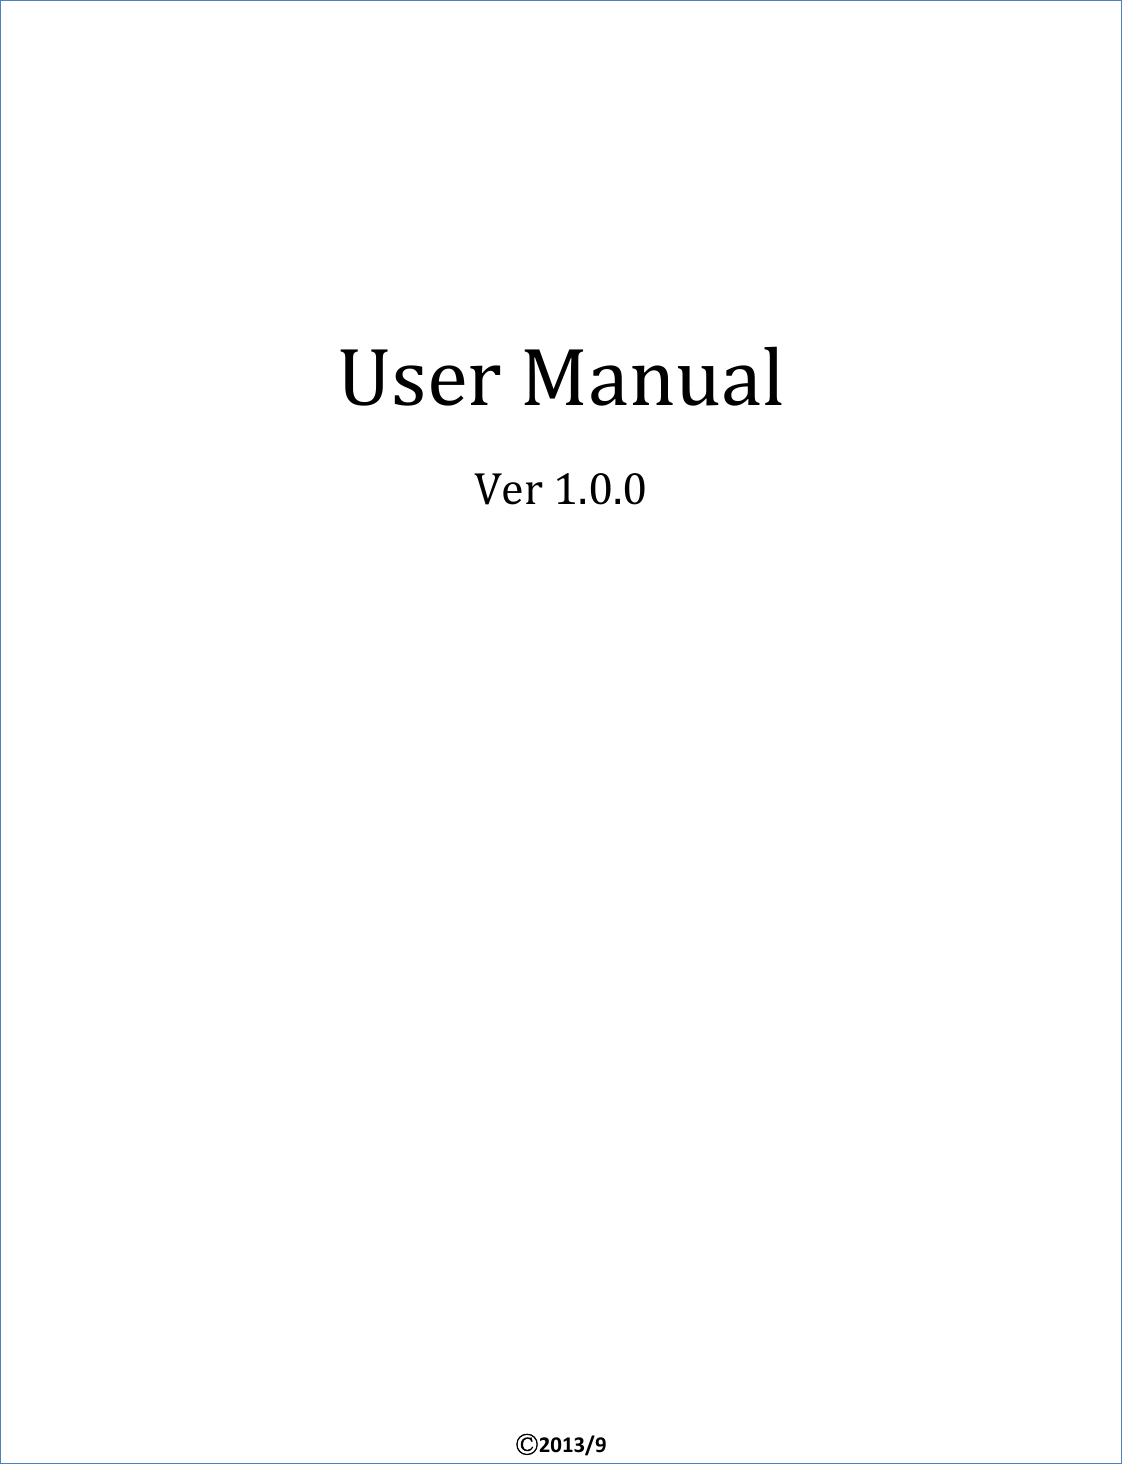 UserManualVer1.0.0Ⓒ2013/9 